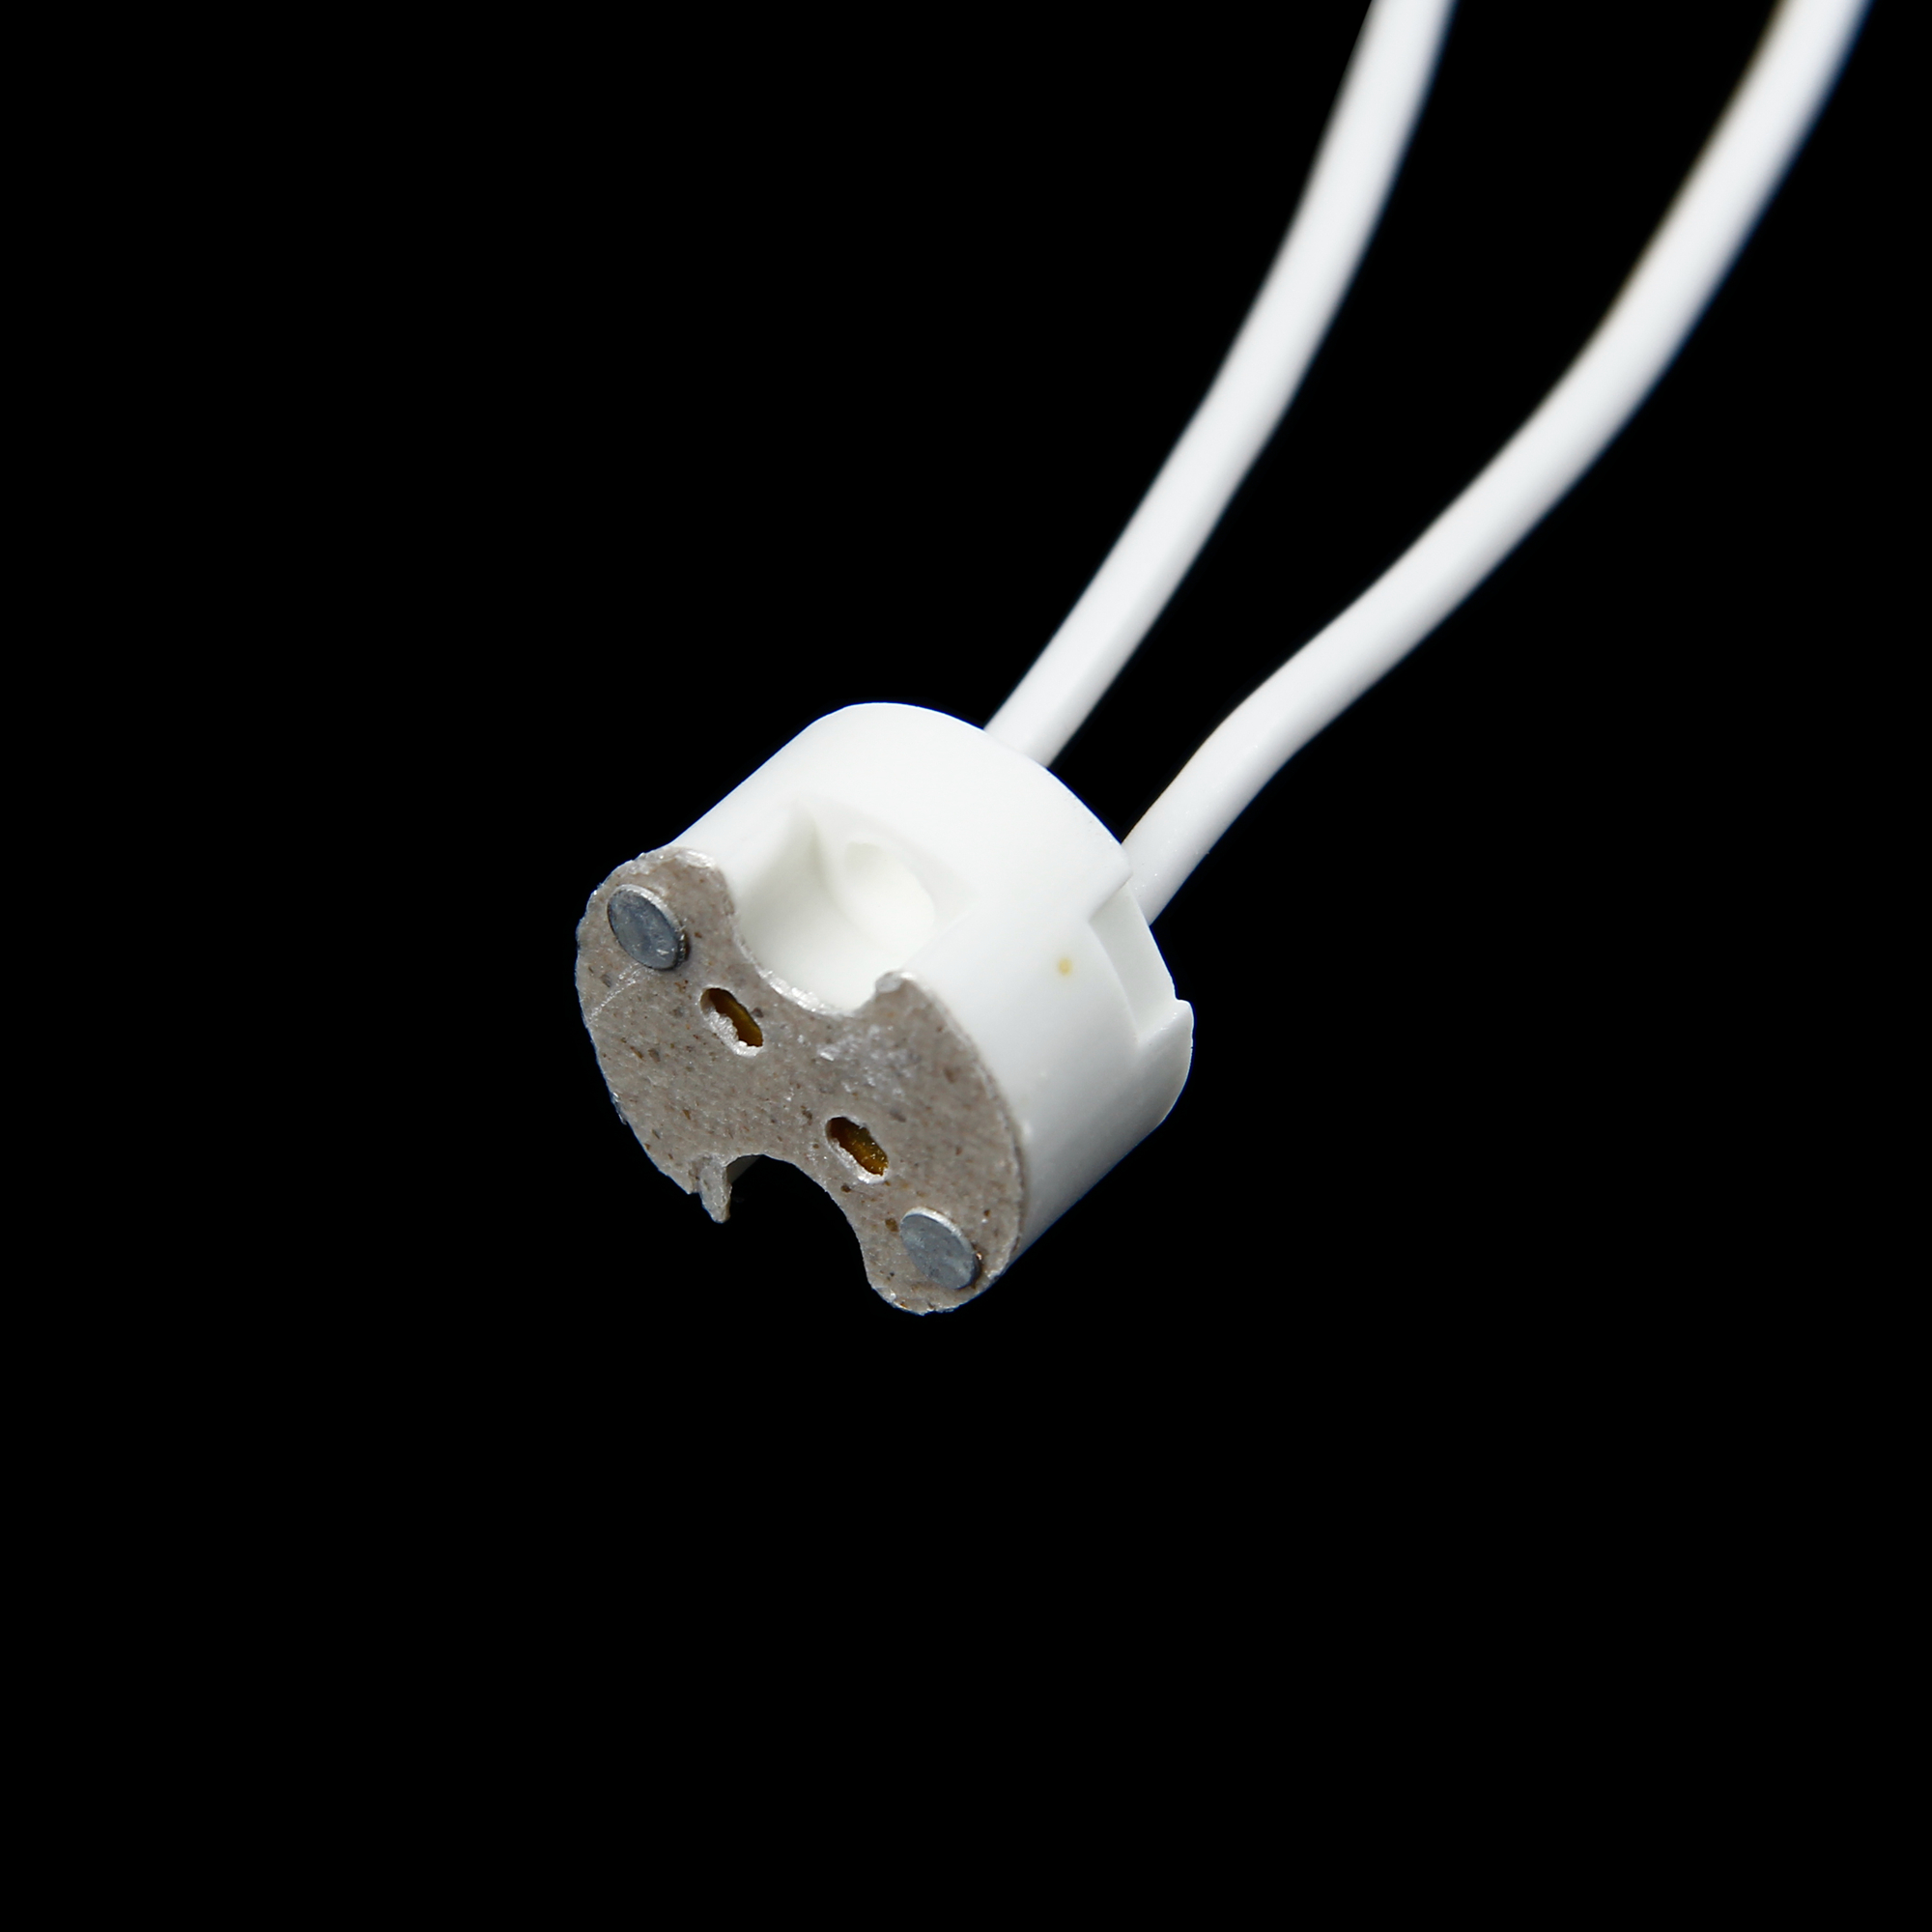 10 Halogen MR16 G4 Lamp Base Socket Wire Holder Connector Adapter ...